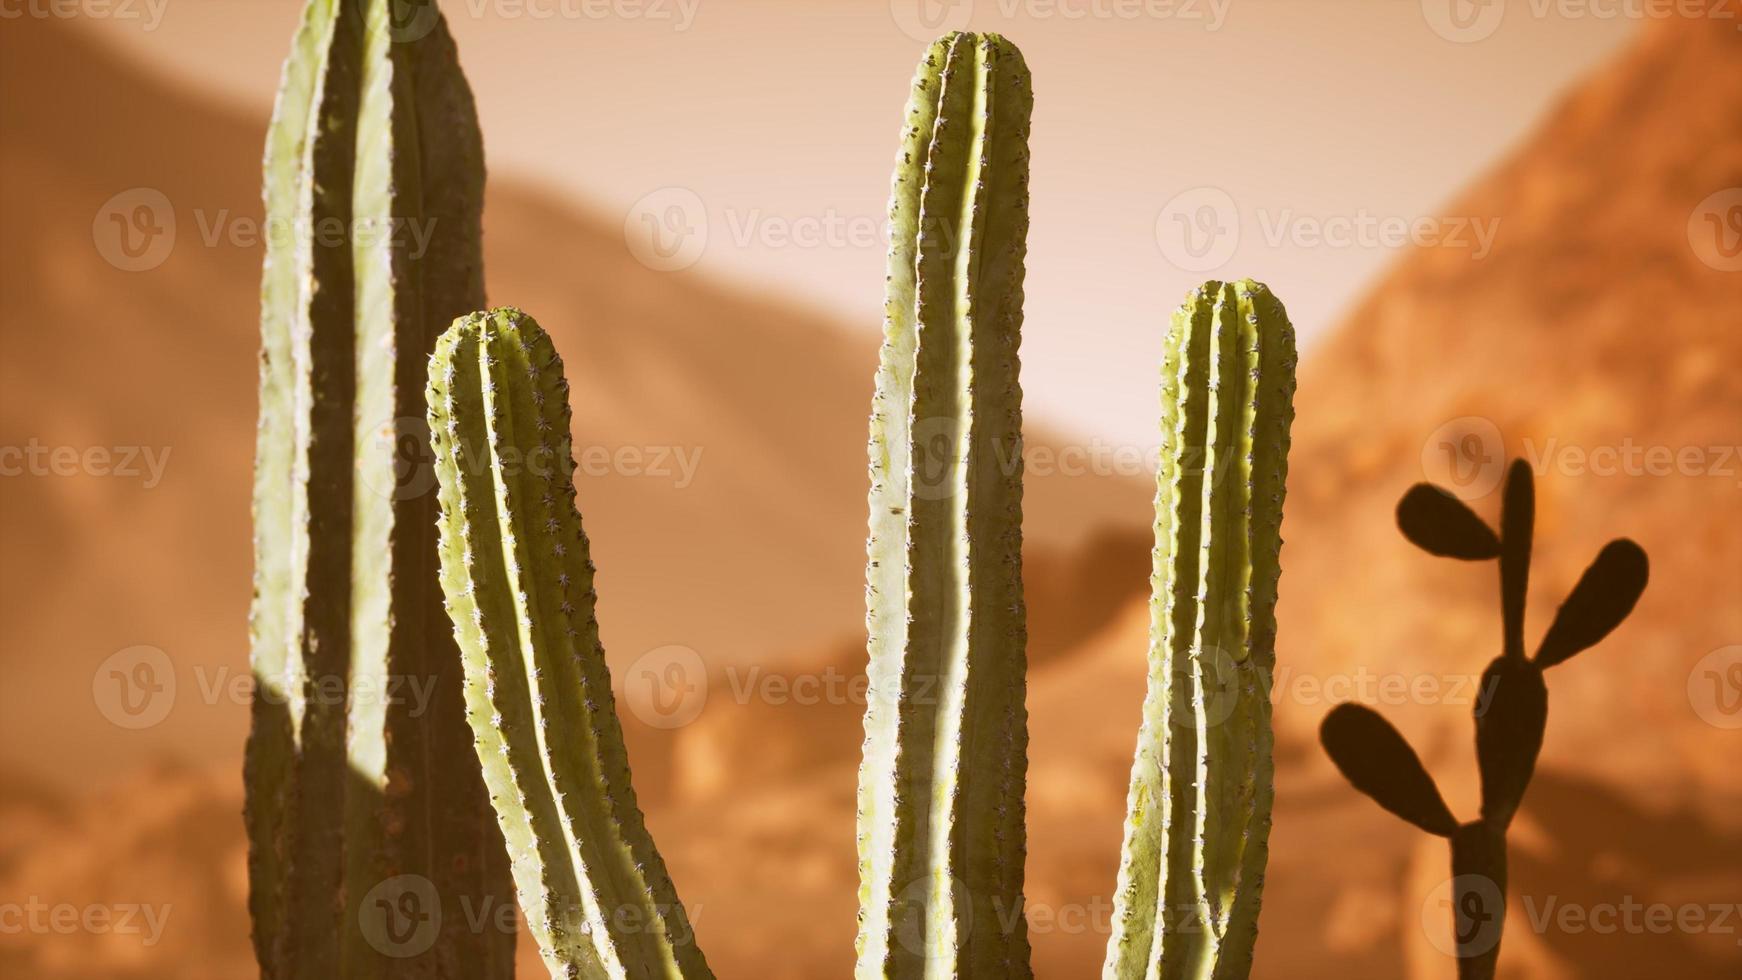 pôr do sol no deserto do arizona com cacto saguaro gigante foto